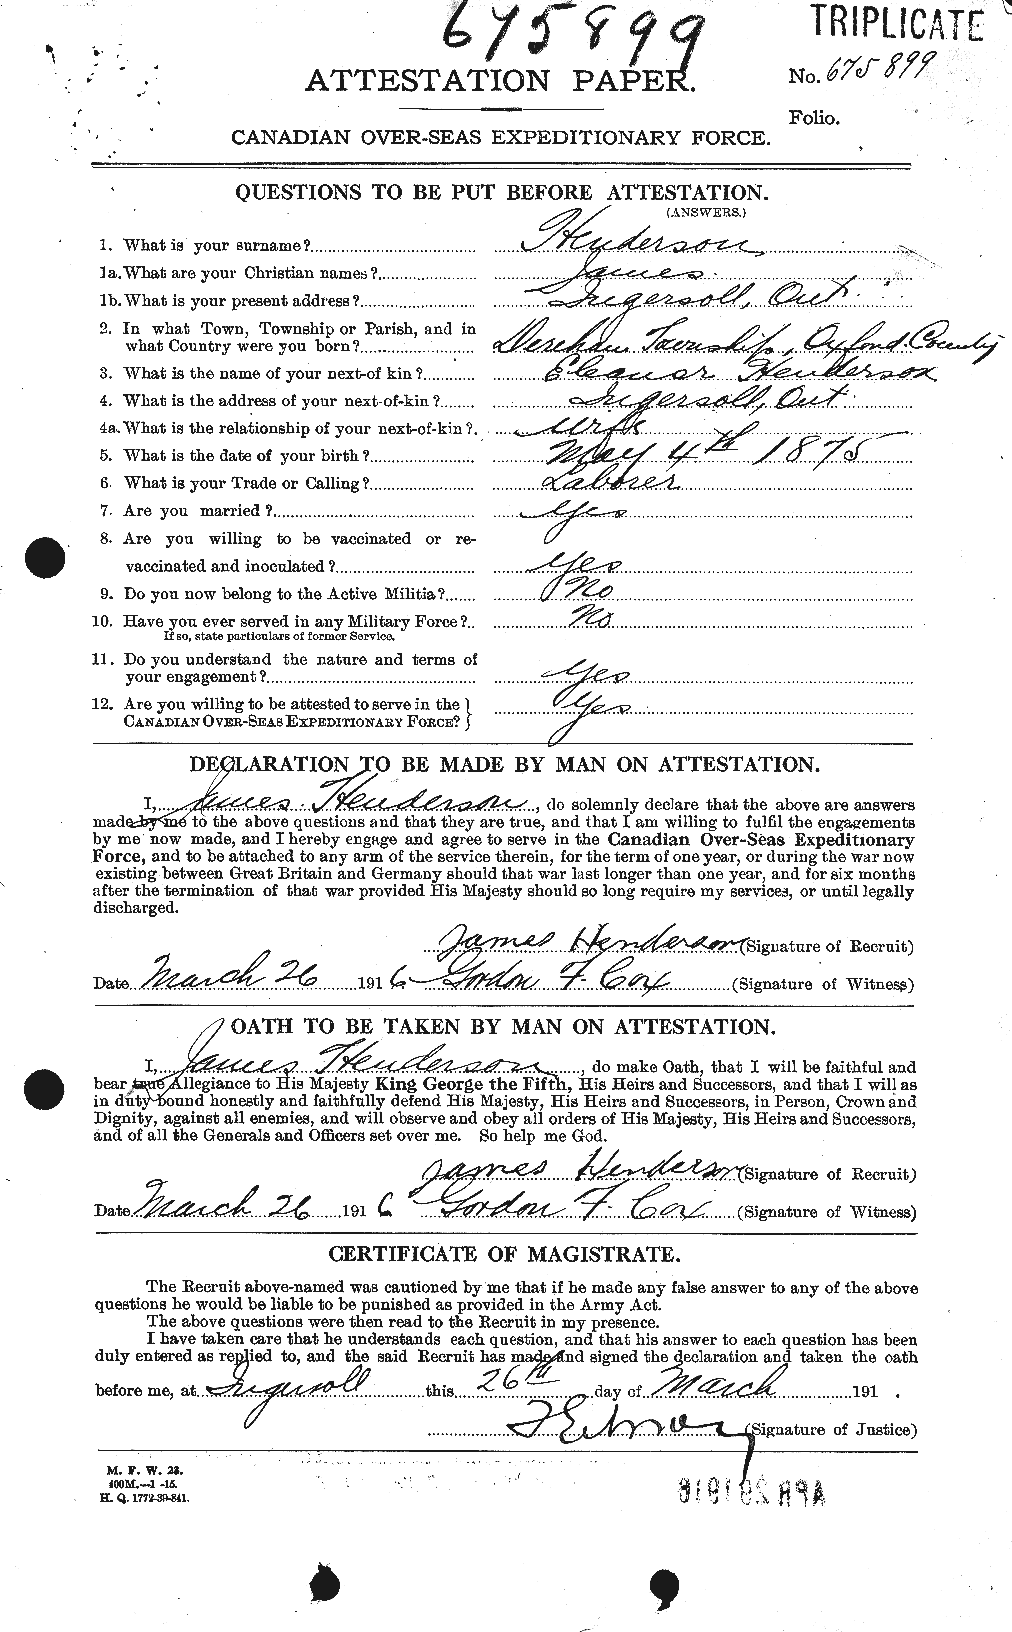 Dossiers du Personnel de la Première Guerre mondiale - CEC 390352a